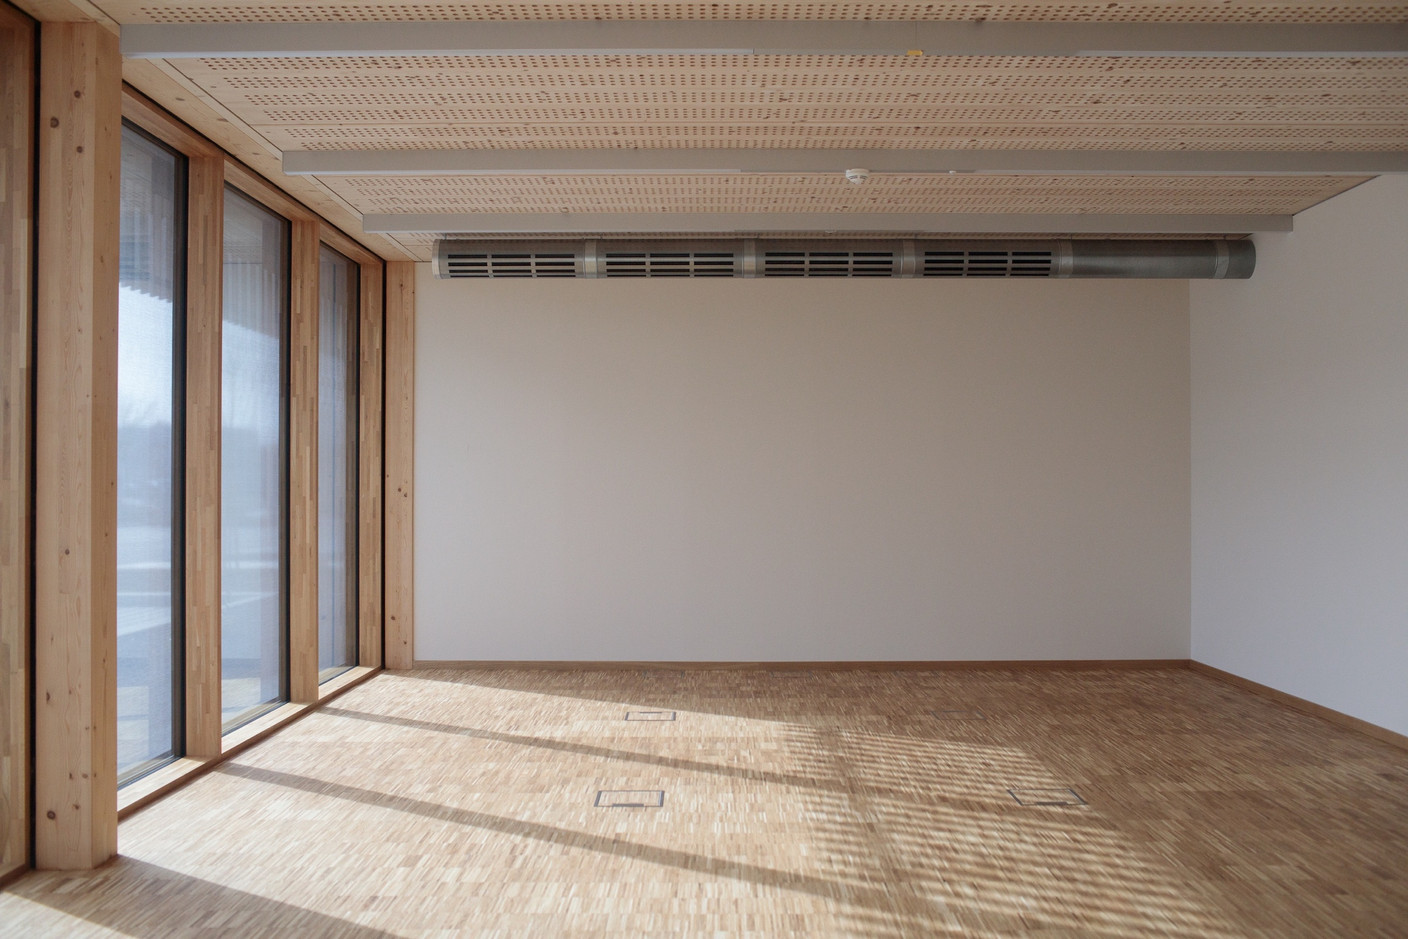 L’espace comprend aussi des salles de conférence, ainsi que des pièces pouvant accueillir des formations théoriques. (Photo: Matic Zorman/Maison Moderne)